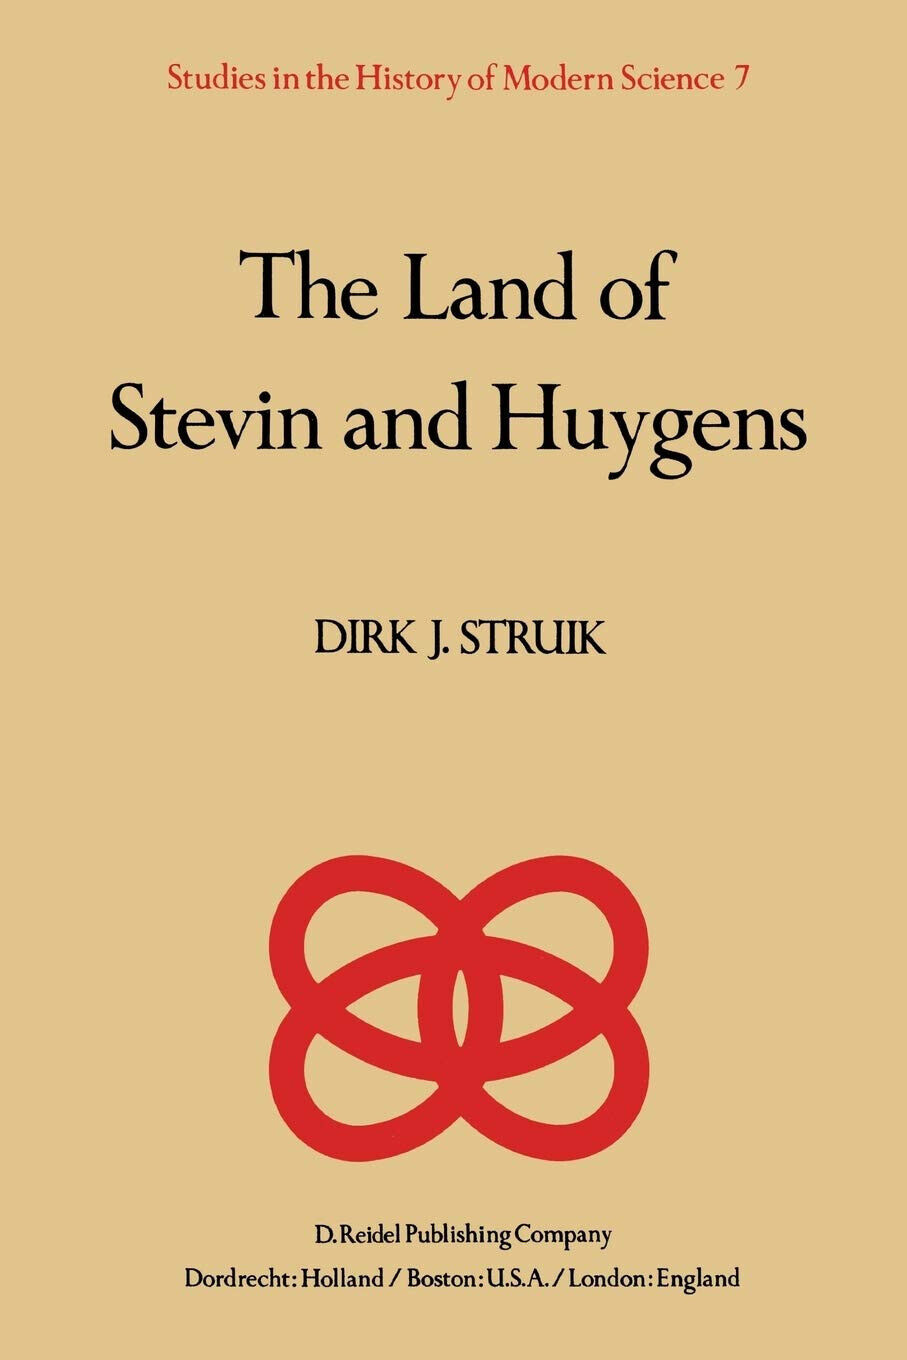 The Land of Stevin and Huygens - D. J. Struik - Springer, 2013